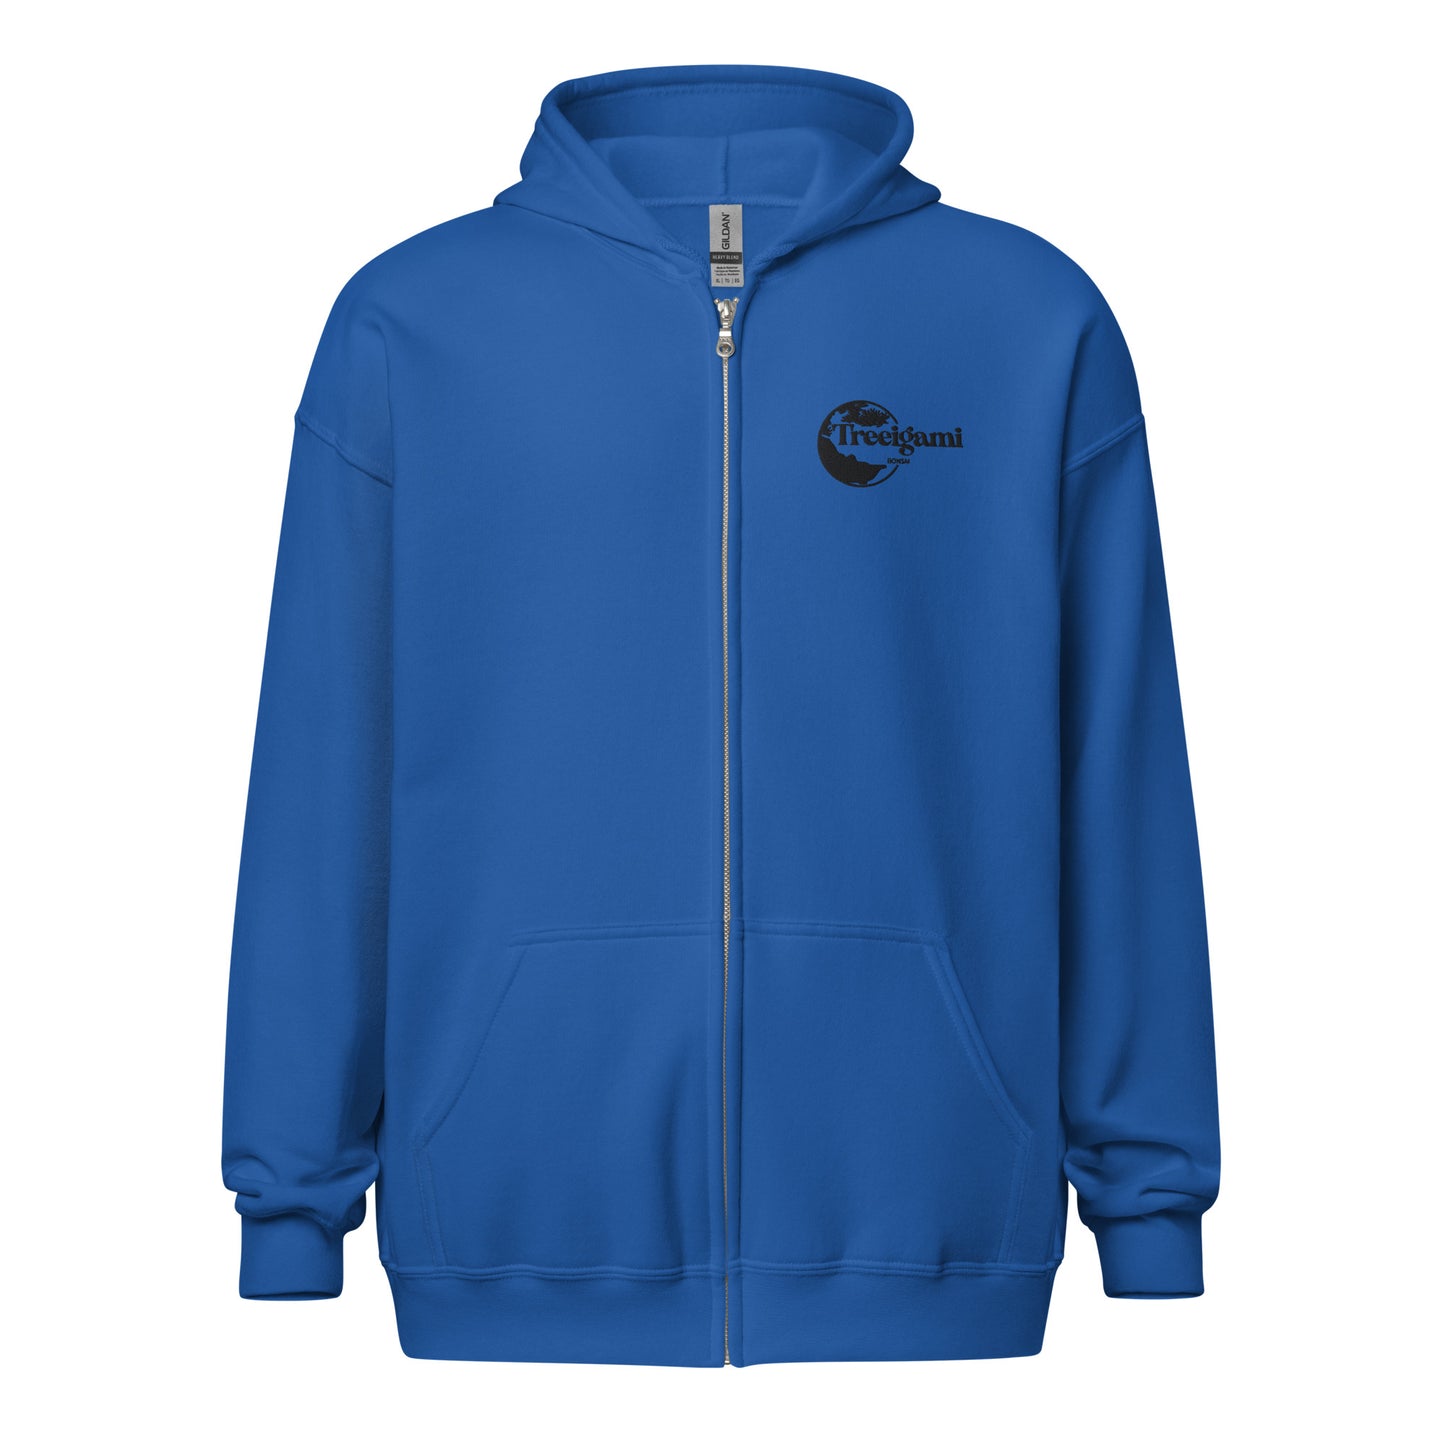 Treeigami Unisex heavy blend zip hoodie - Black Embordered Logo